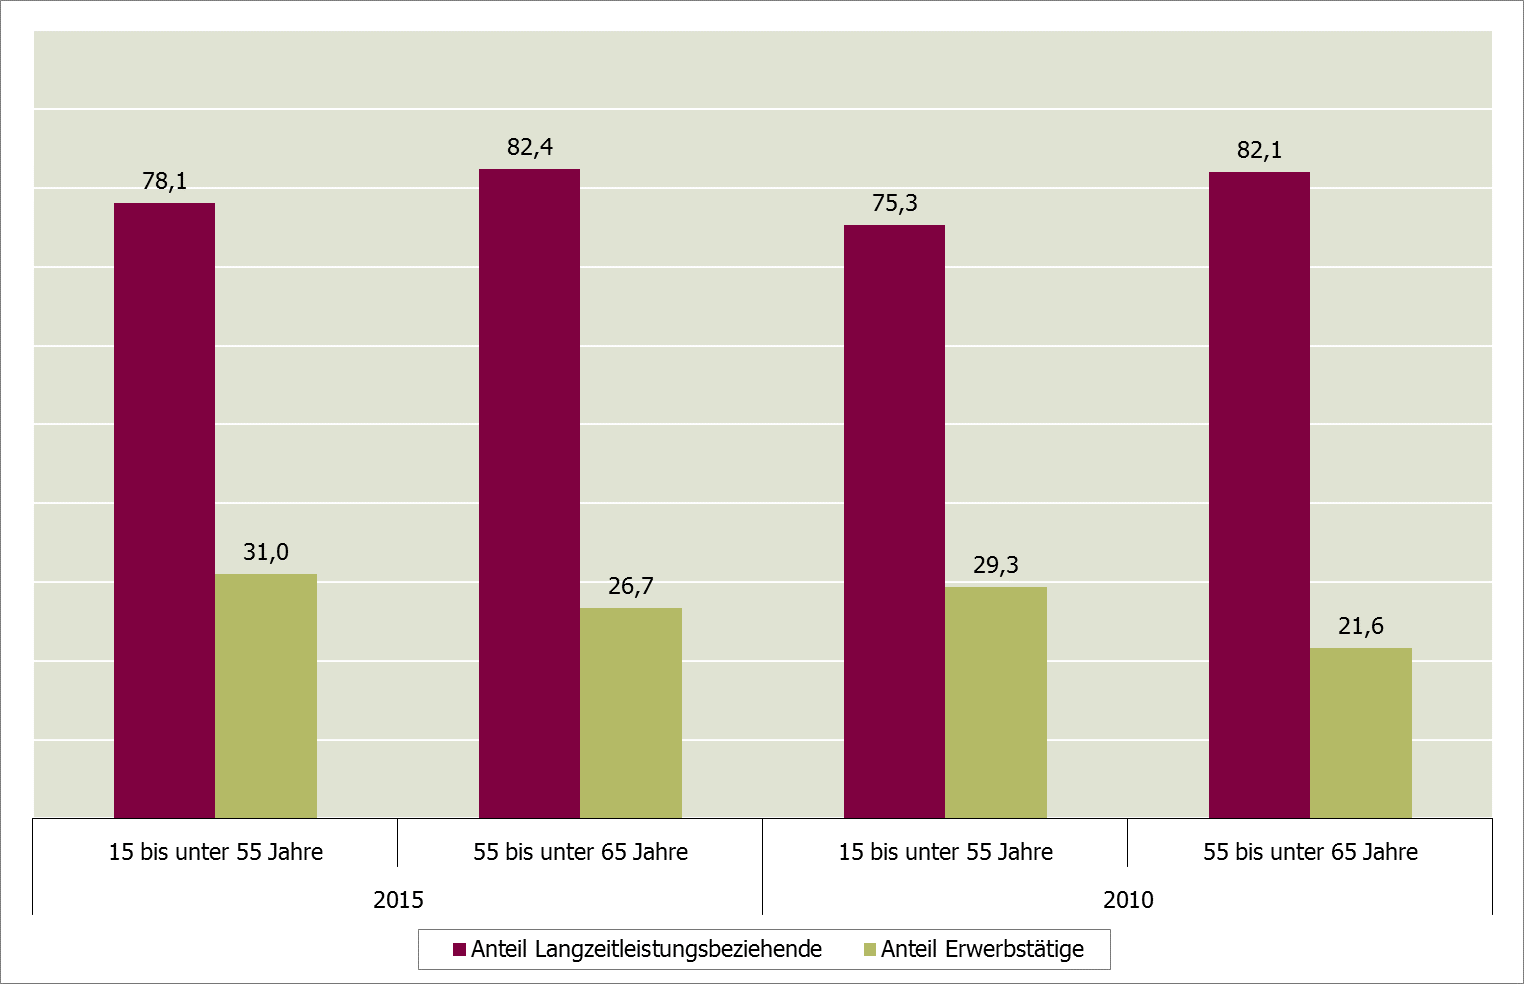 Abbildung 25: Langzeitleistungsbeziehende im SGB II und erwerbstätige erwerbsfähige Leistungsberechtigte nach Altersgruppen 2015 und 2010 in NRW (JD, in %) Quelle: Eigene Berechnungen nach Daten der